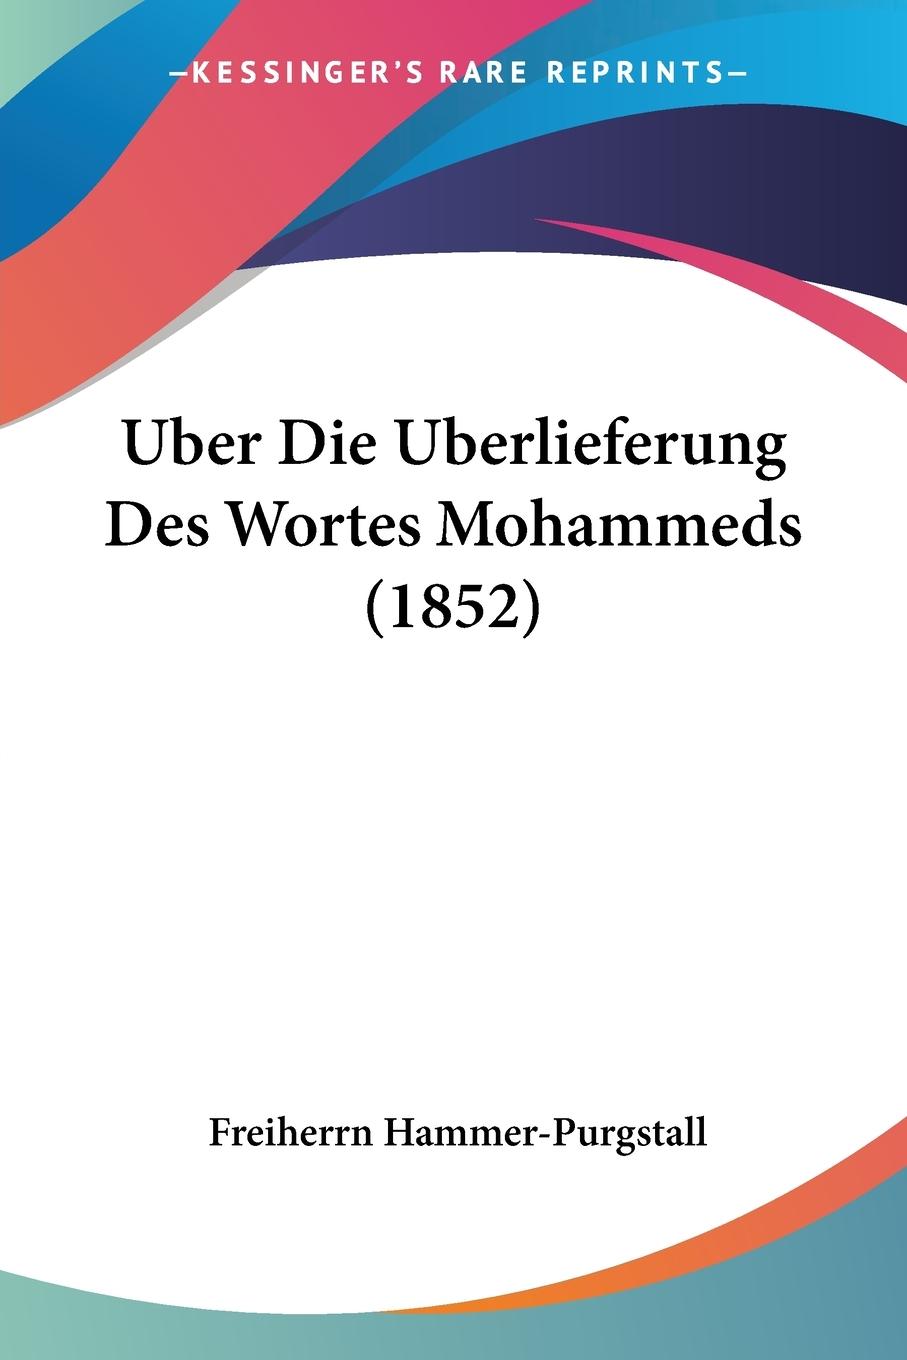 Uber Die Uberlieferung Des Wortes Mohammeds (1852) - Hammer-Purgstall, Freiherrn